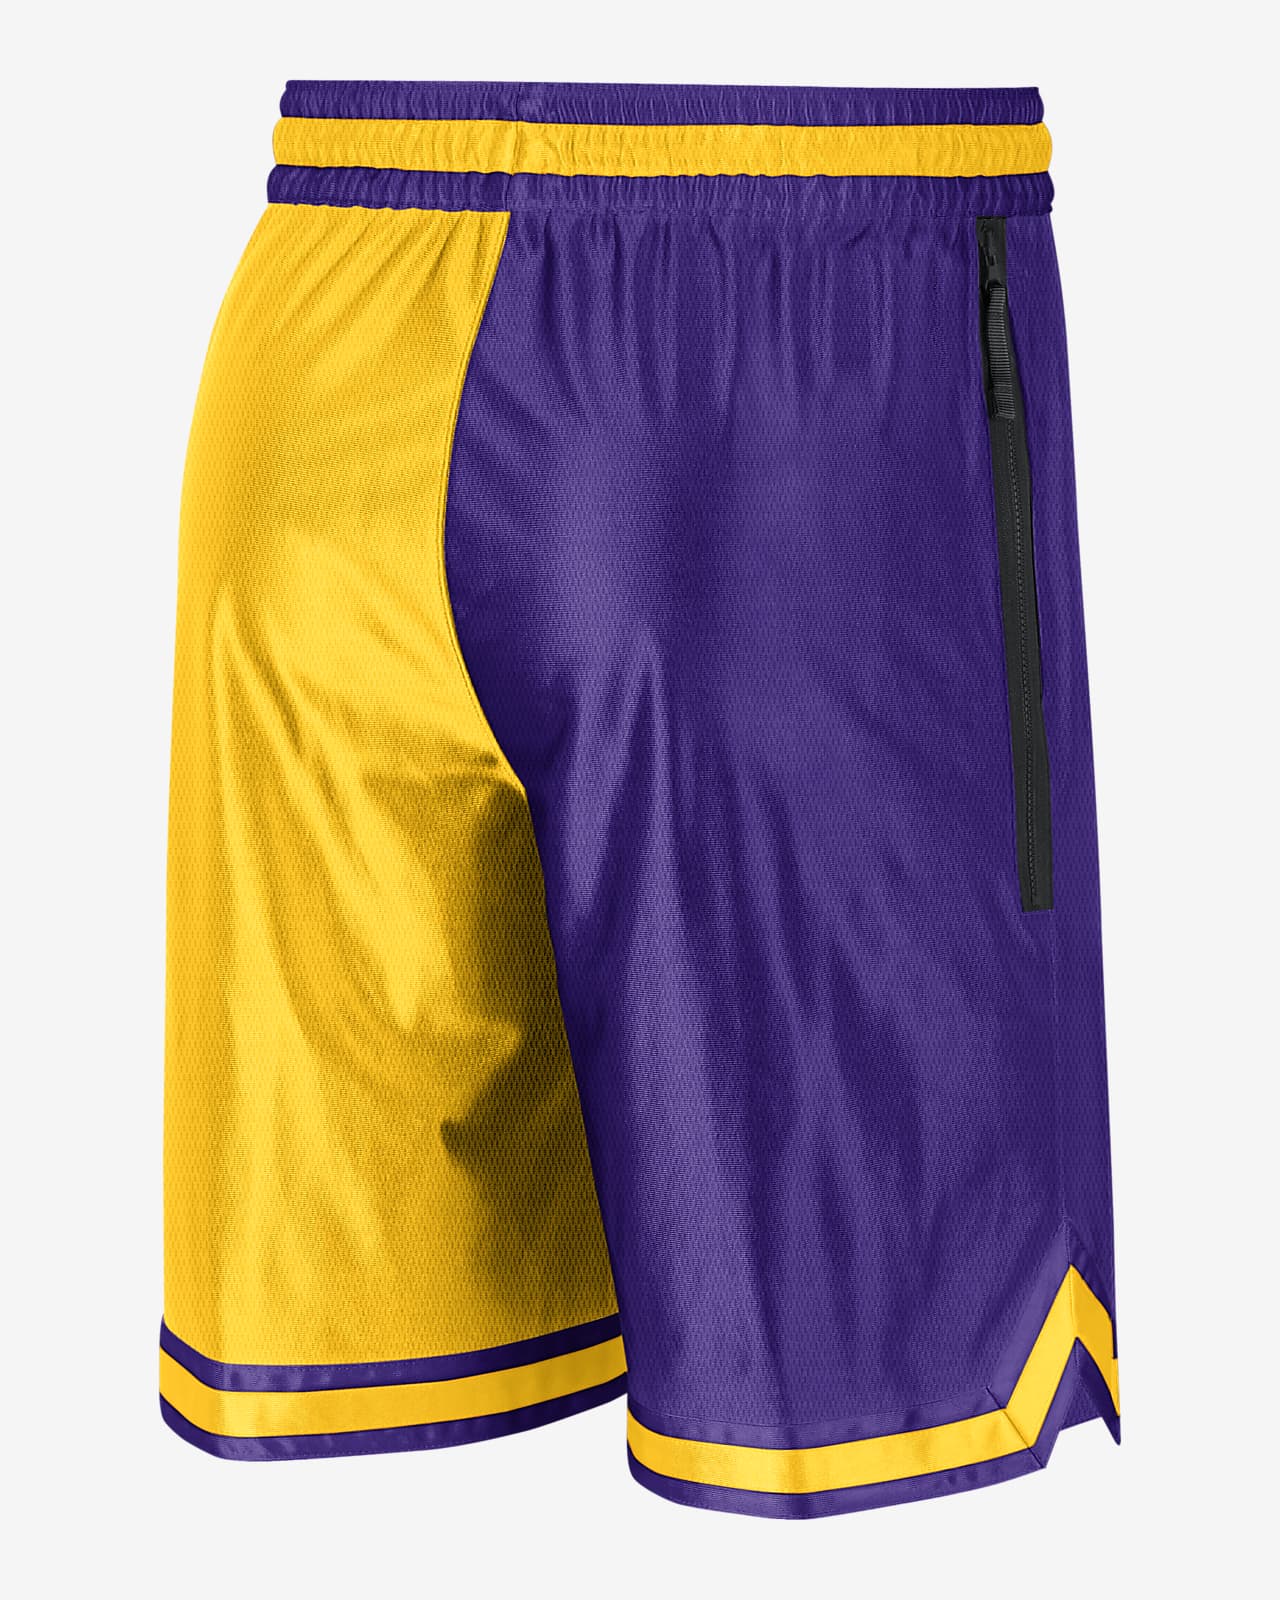 yellow laker shorts